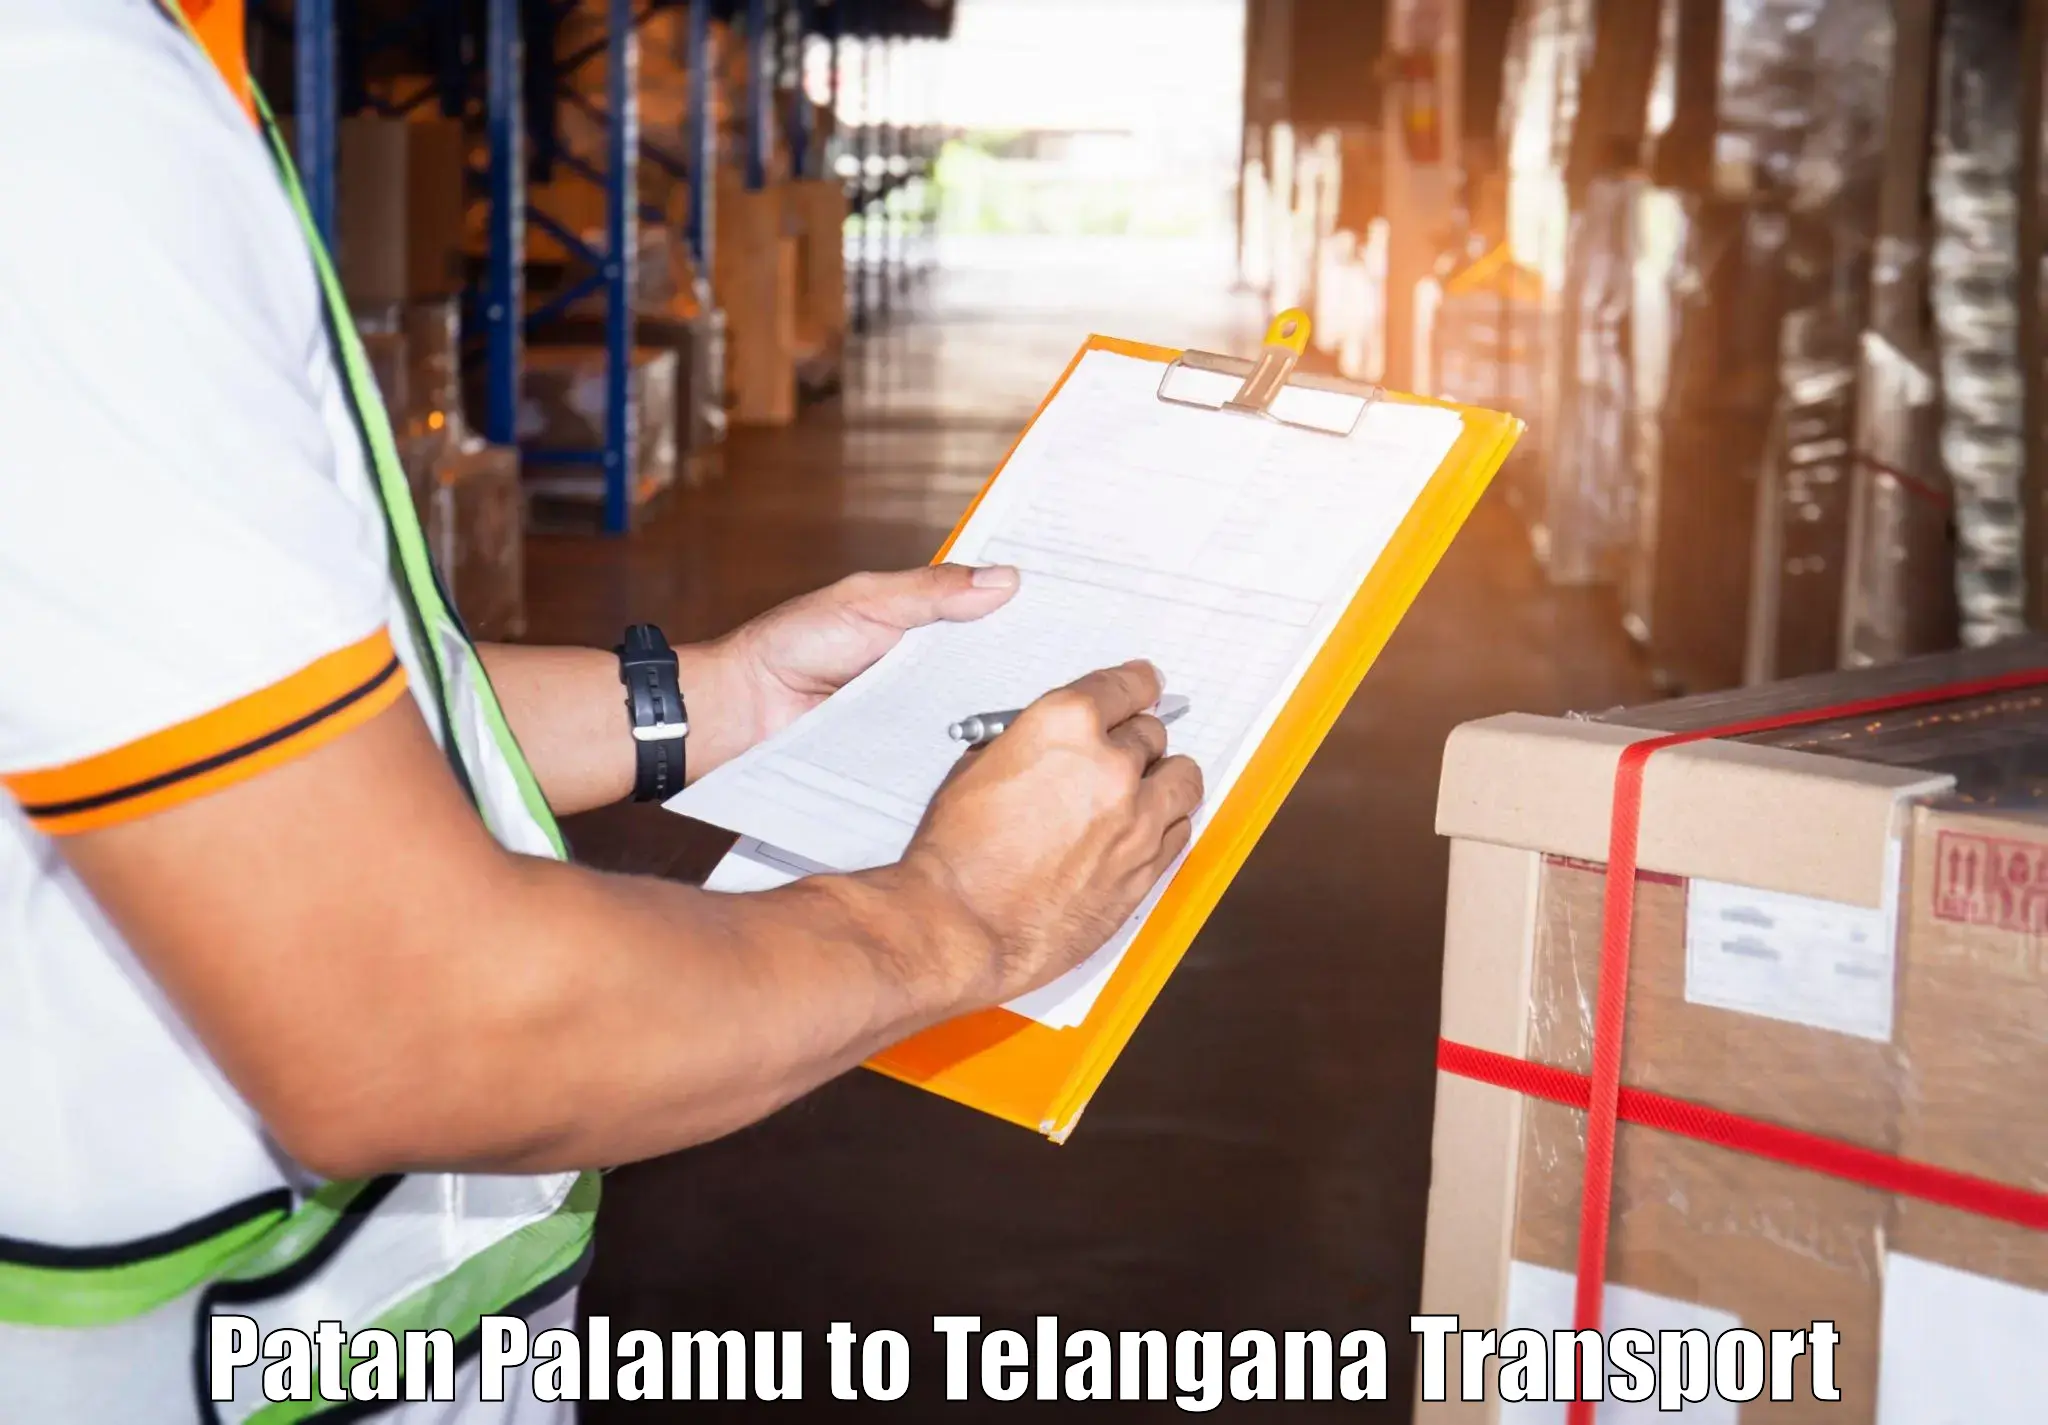 Shipping partner Patan Palamu to Manneguda